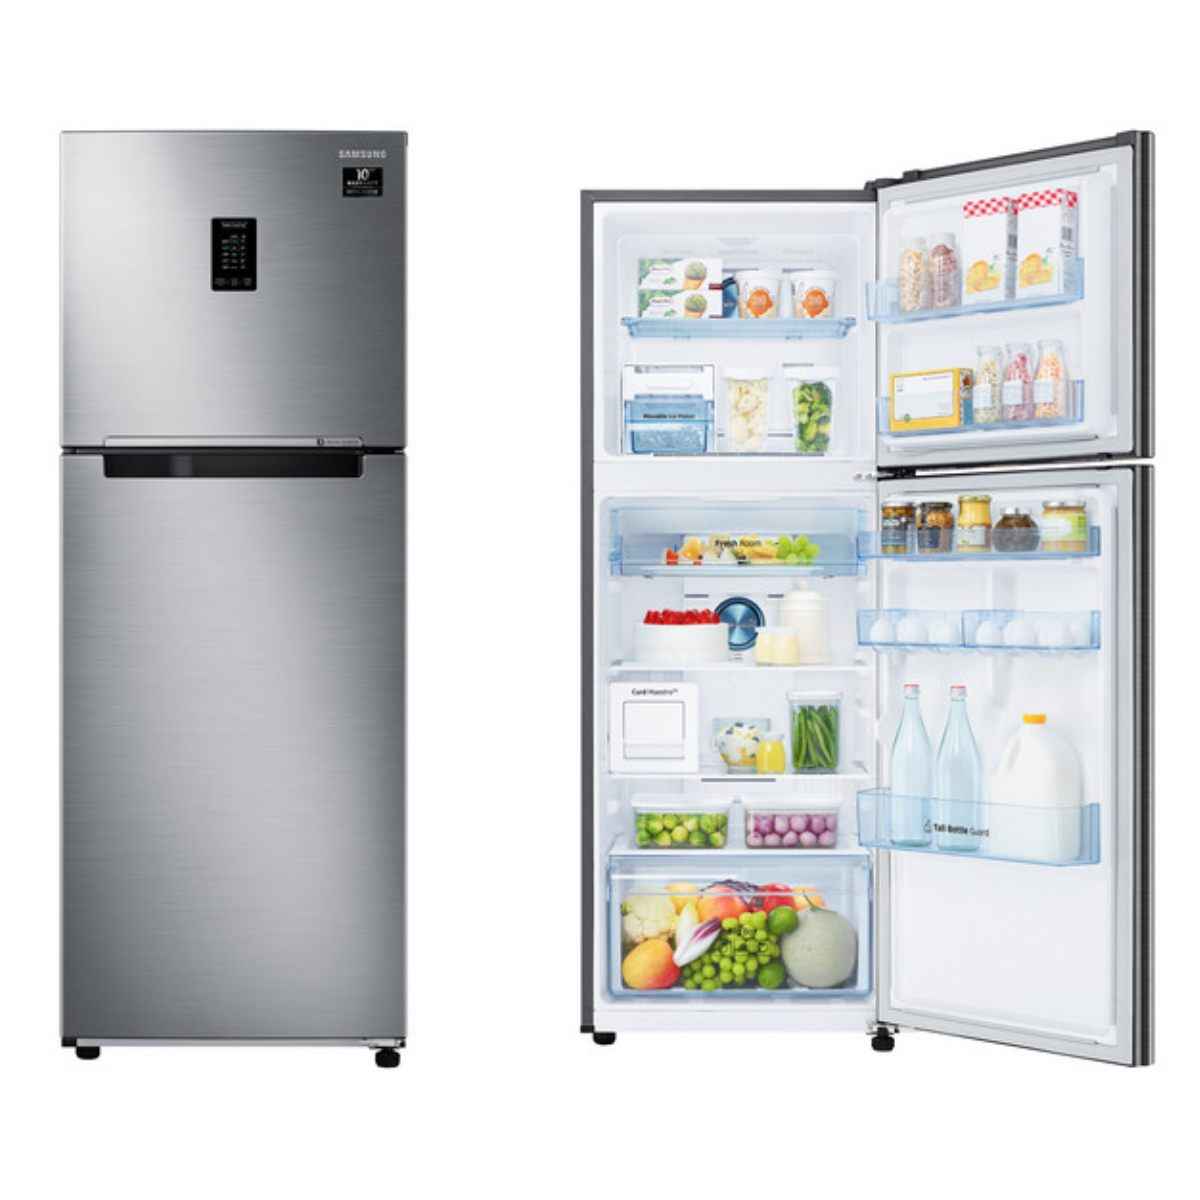 Samsung 407L 3 Star Curd Mastro Refrigerator